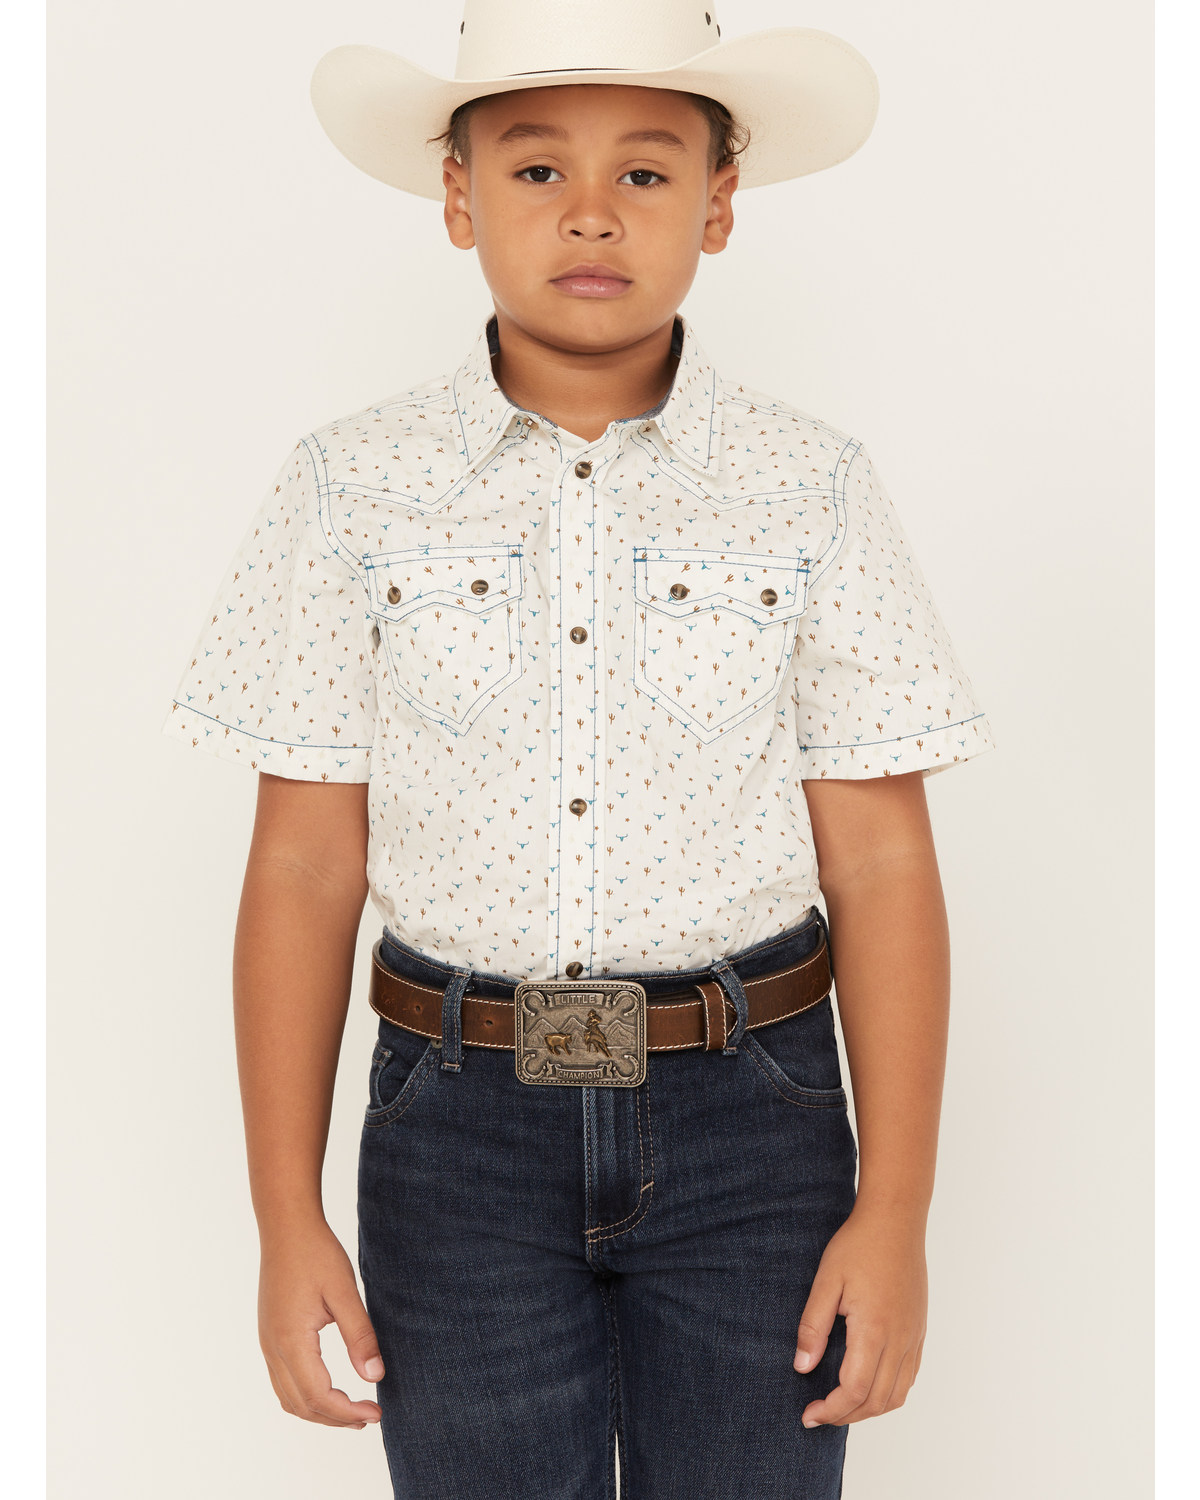 Cody James Boys' Bull Cactus Short Sleeve Snap Western Shirt